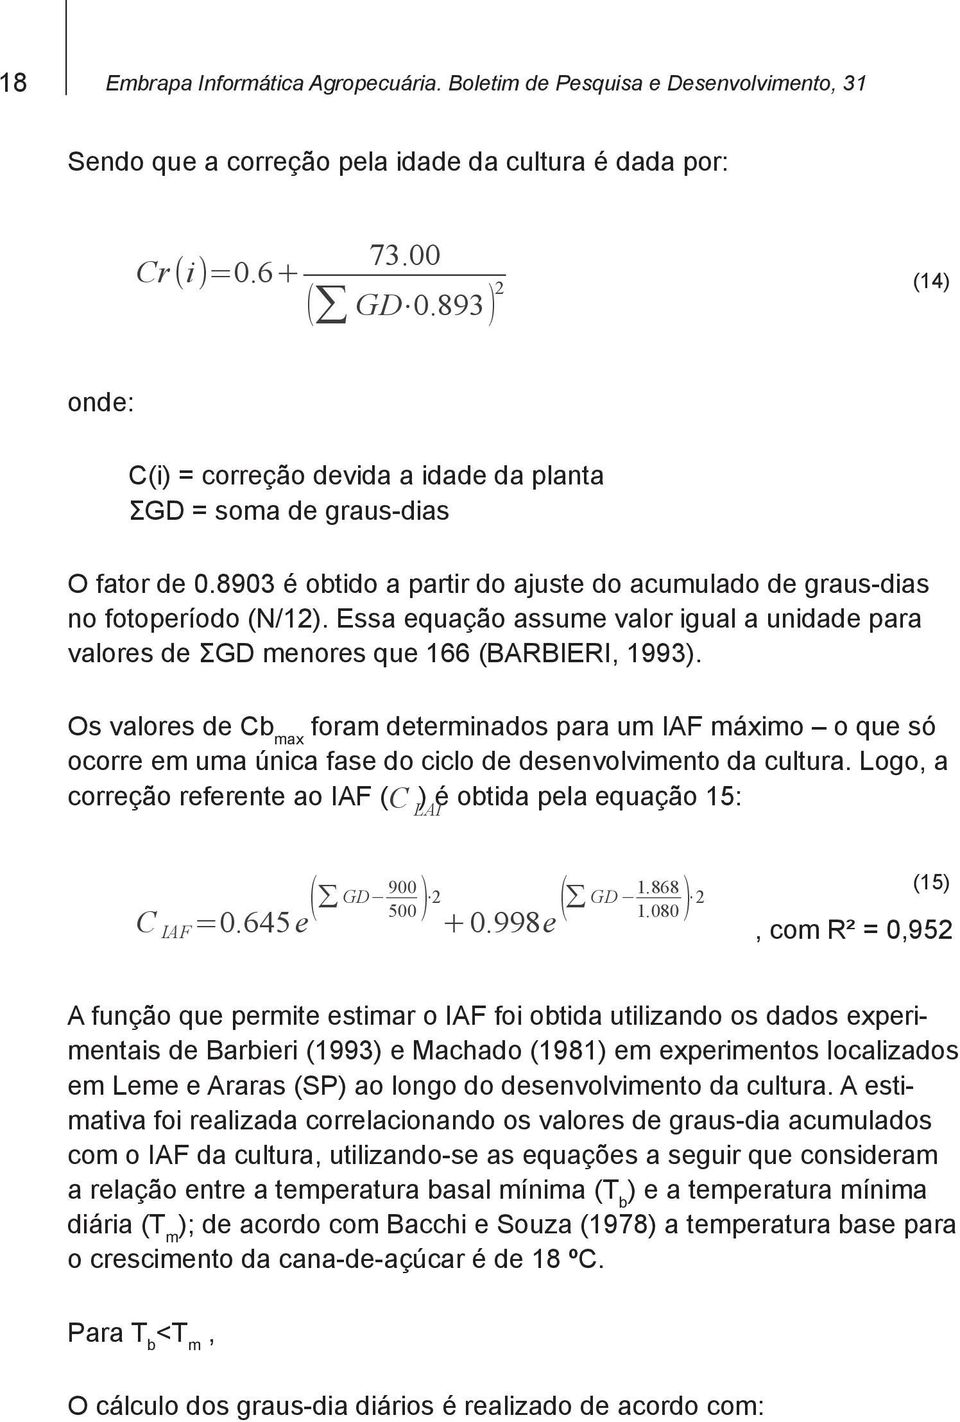 Essa equação assume valor igual a unidade para valores de ΣGD menores que 166 (BARBIERI, 1993).